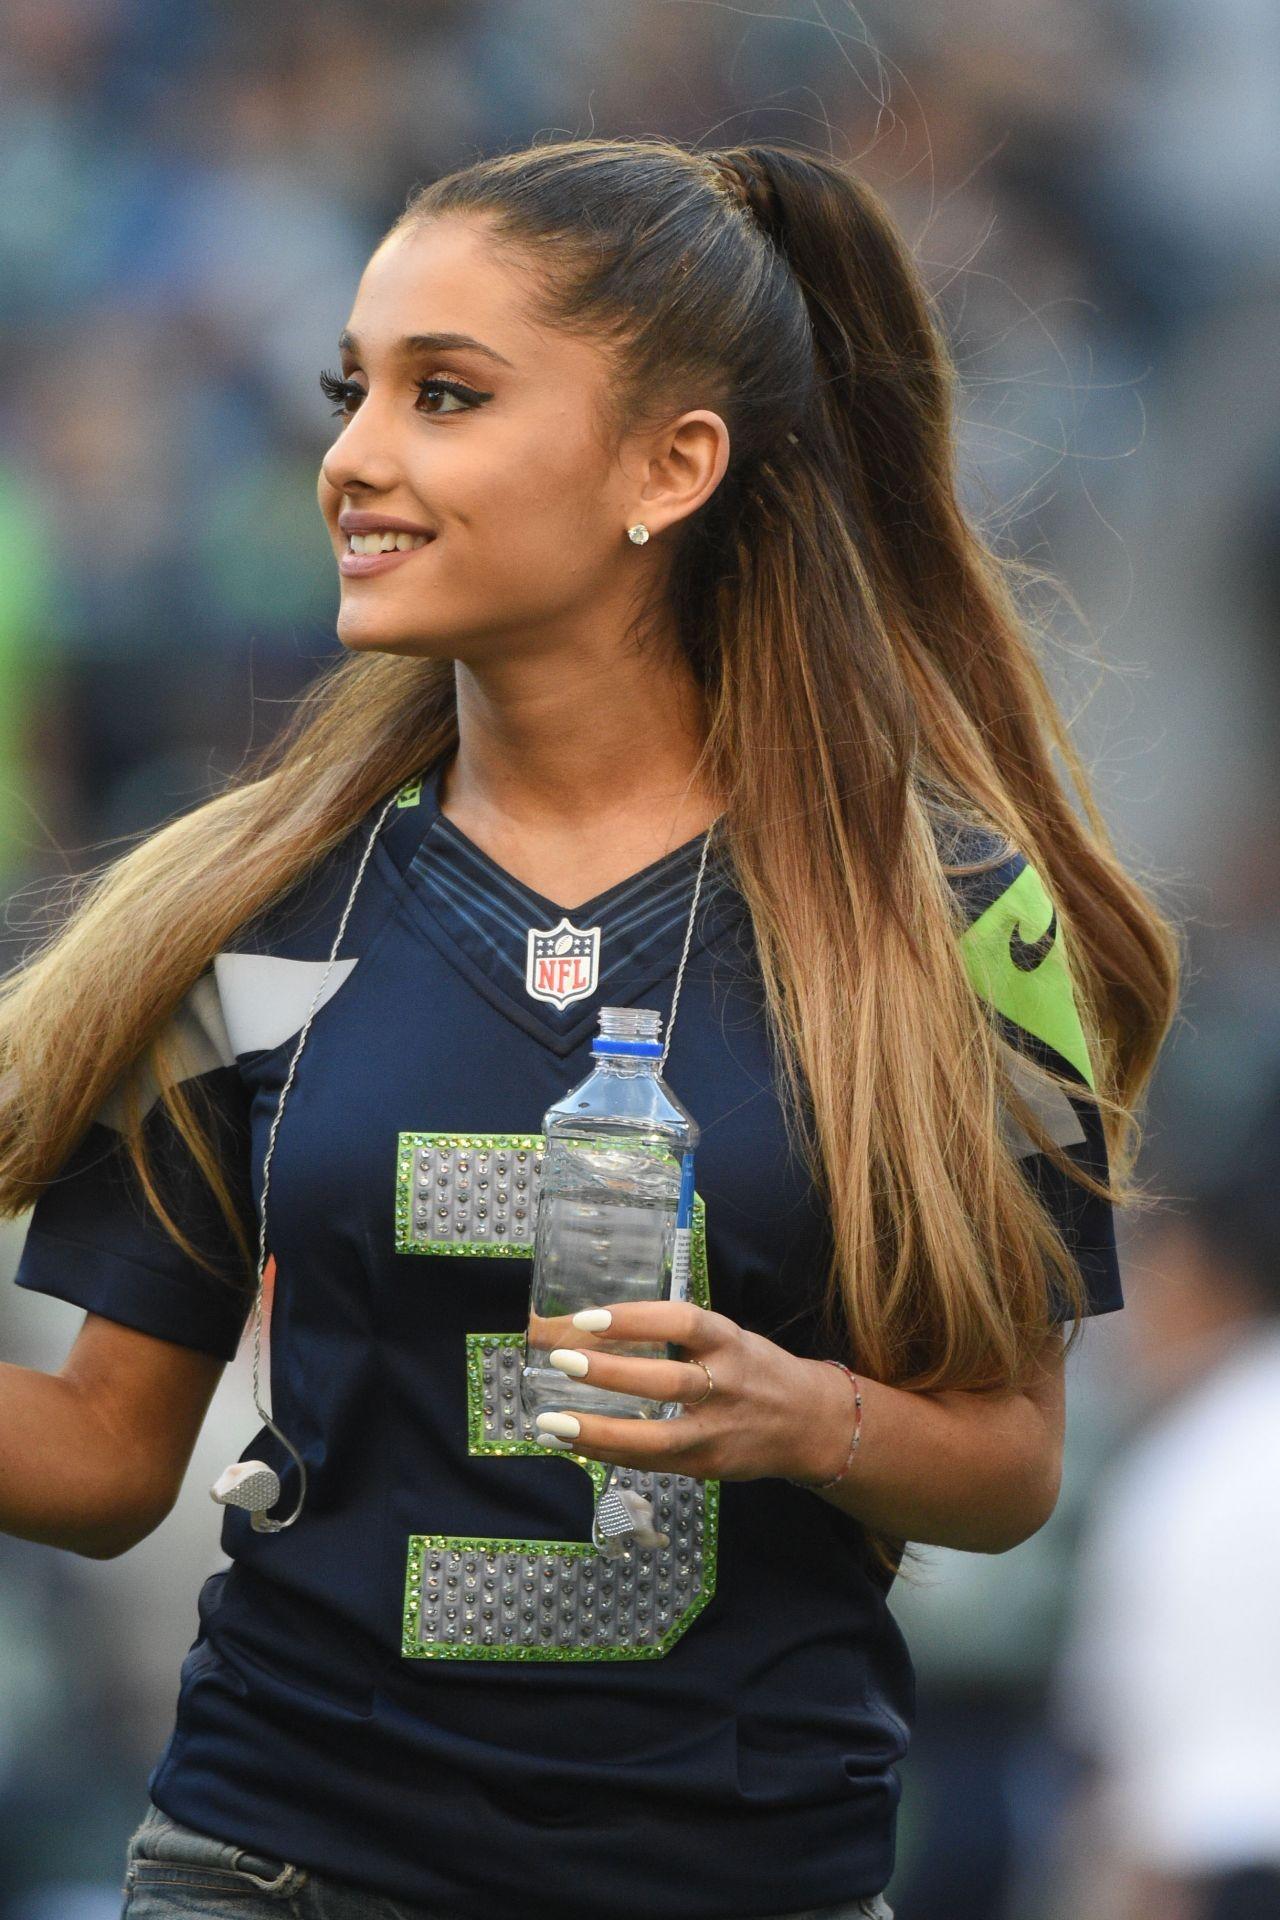 #Ariana Grande, #singer, #NFL, #celebrity, #ponytail